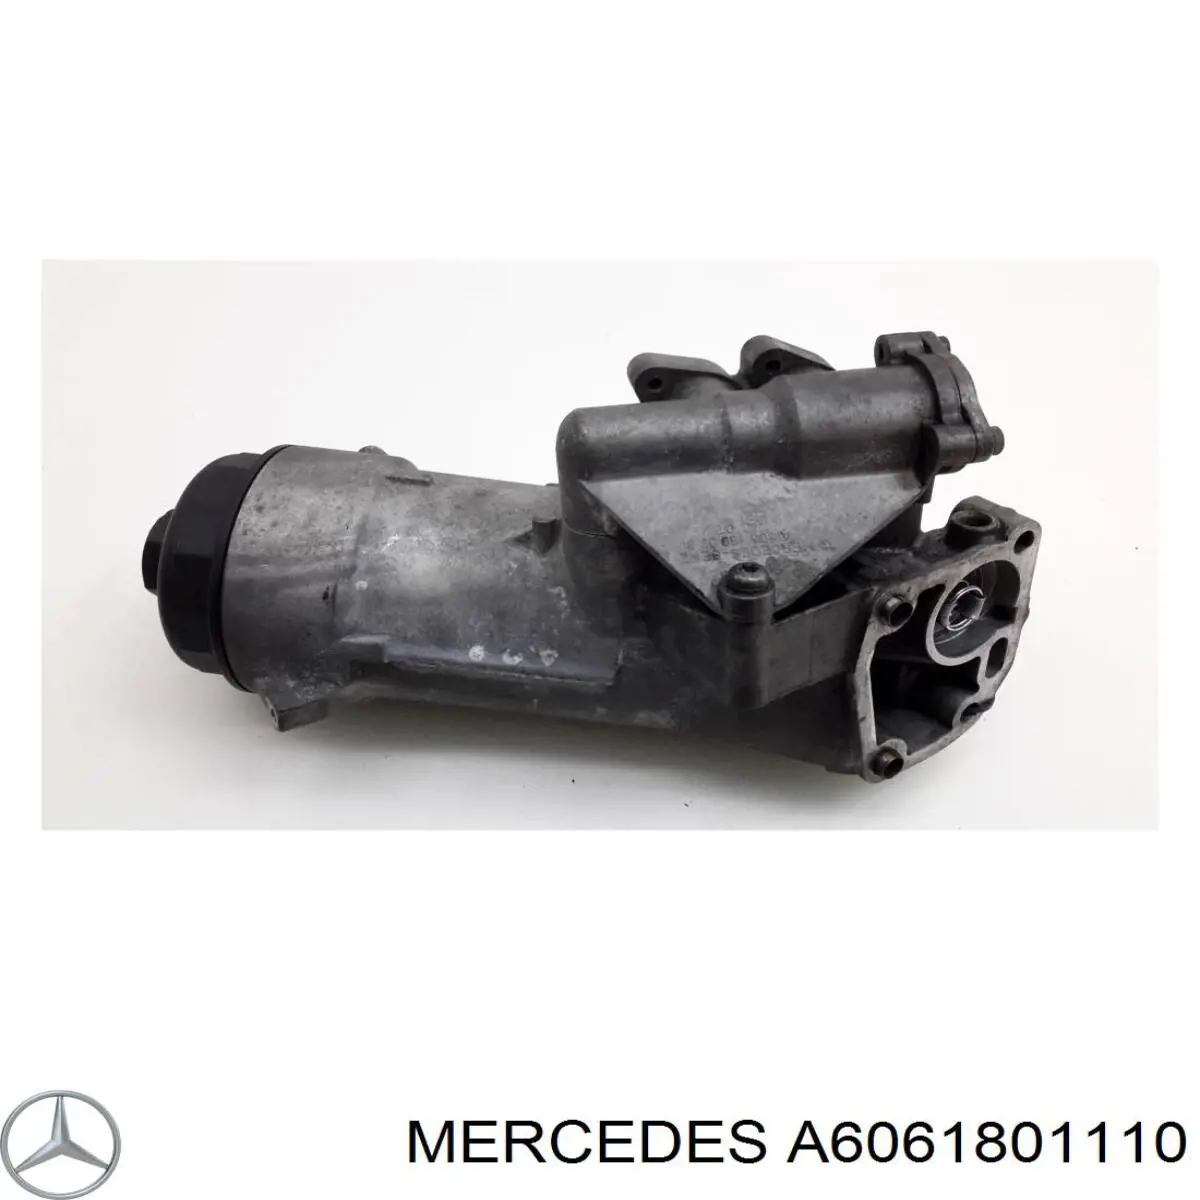 A6061801110 Mercedes caja, filtro de aceite